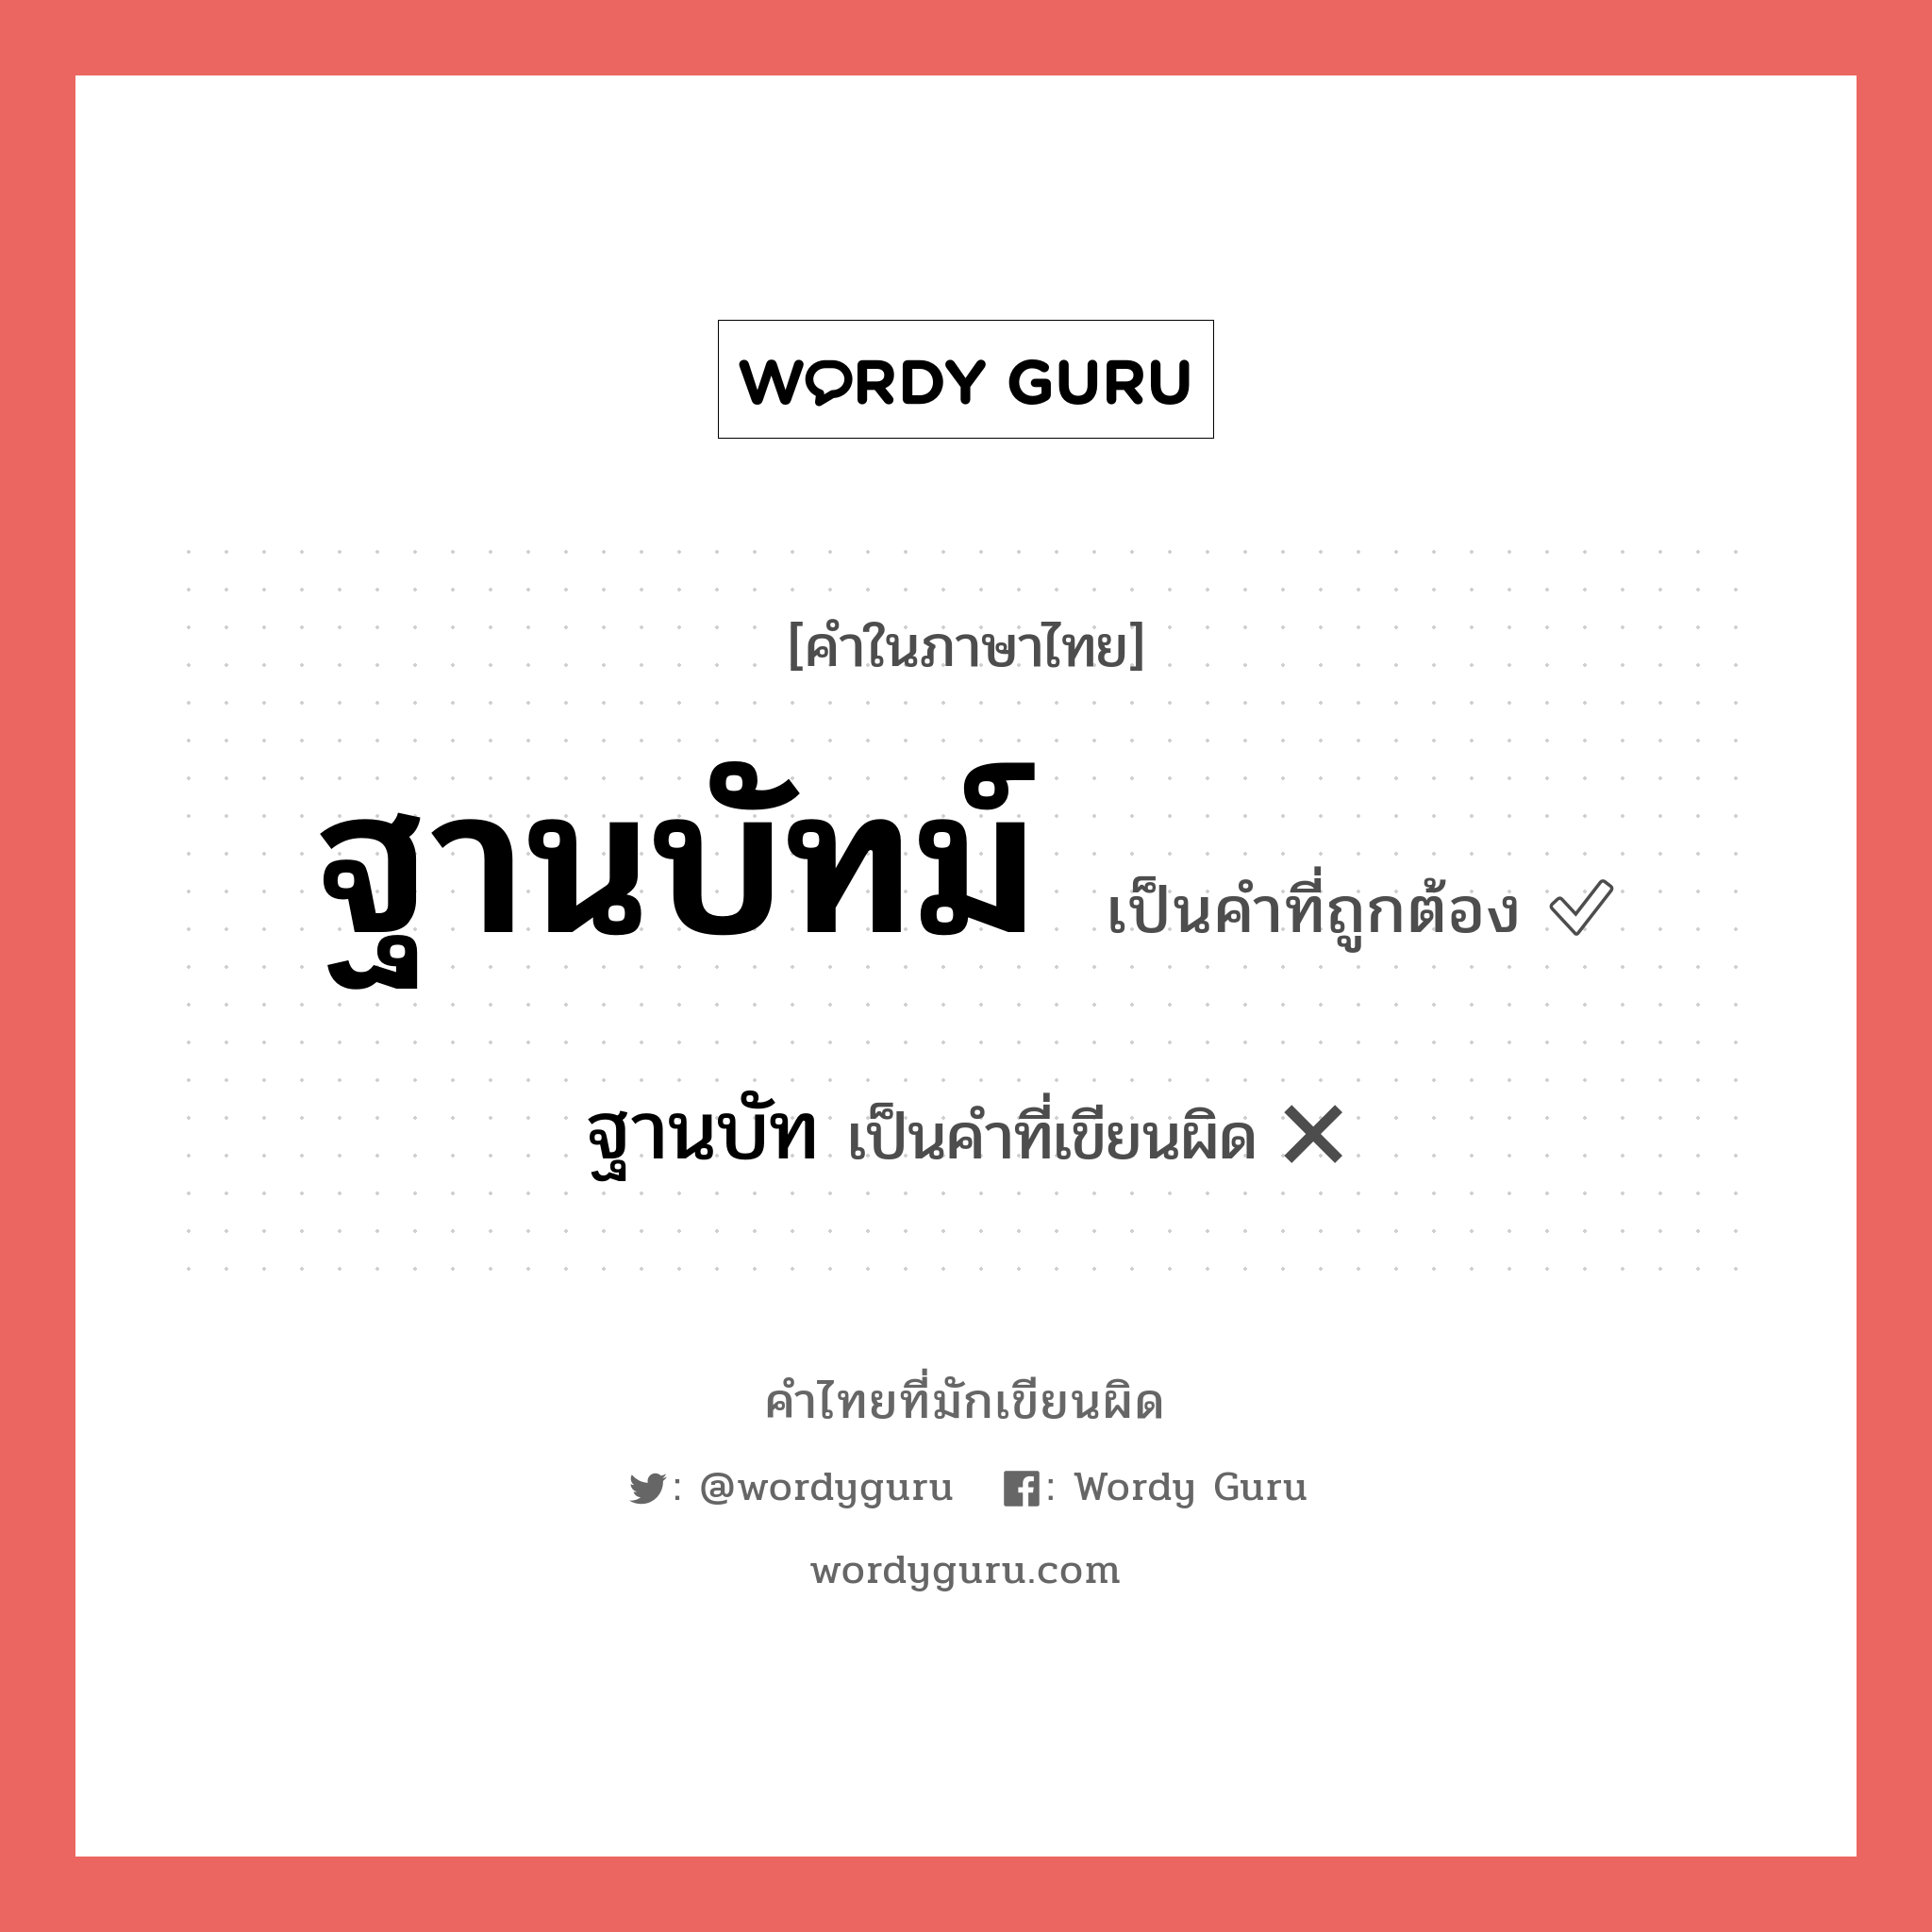 ฐานบัทม์ หรือ ฐานบัท คำไหนเขียนถูก?, คำในภาษาไทยที่มักเขียนผิด ฐานบัทม์ คำที่ผิด ❌ ฐานบัท